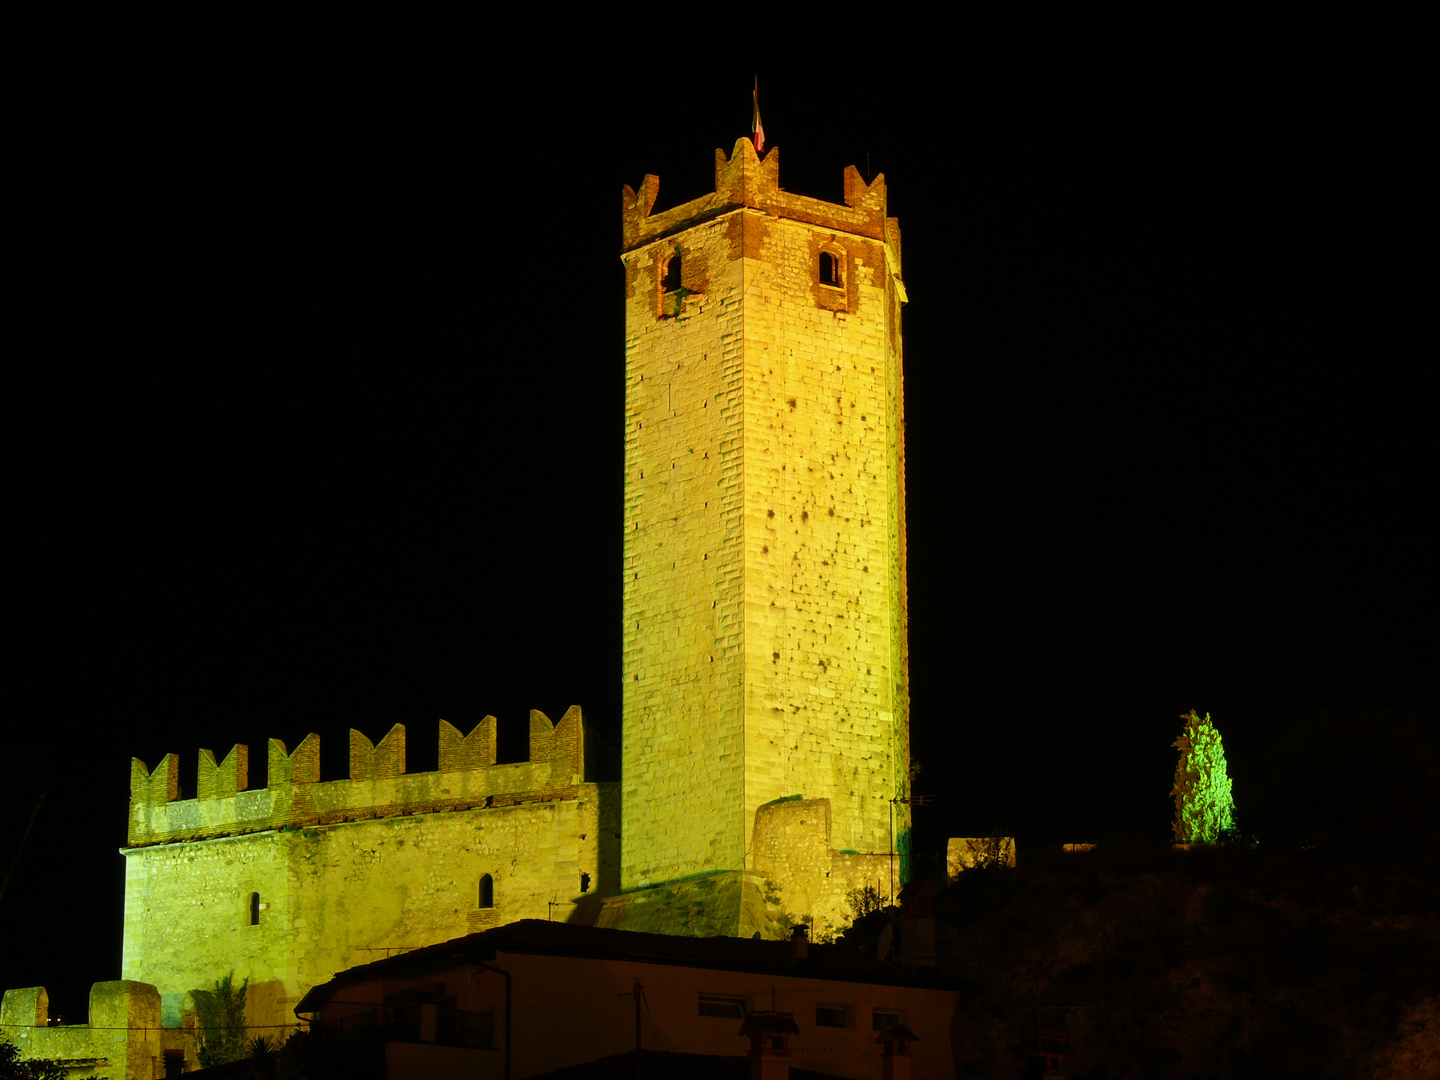 Castello von Malcesine (Gardasee), nachts im Scheinwerferlicht